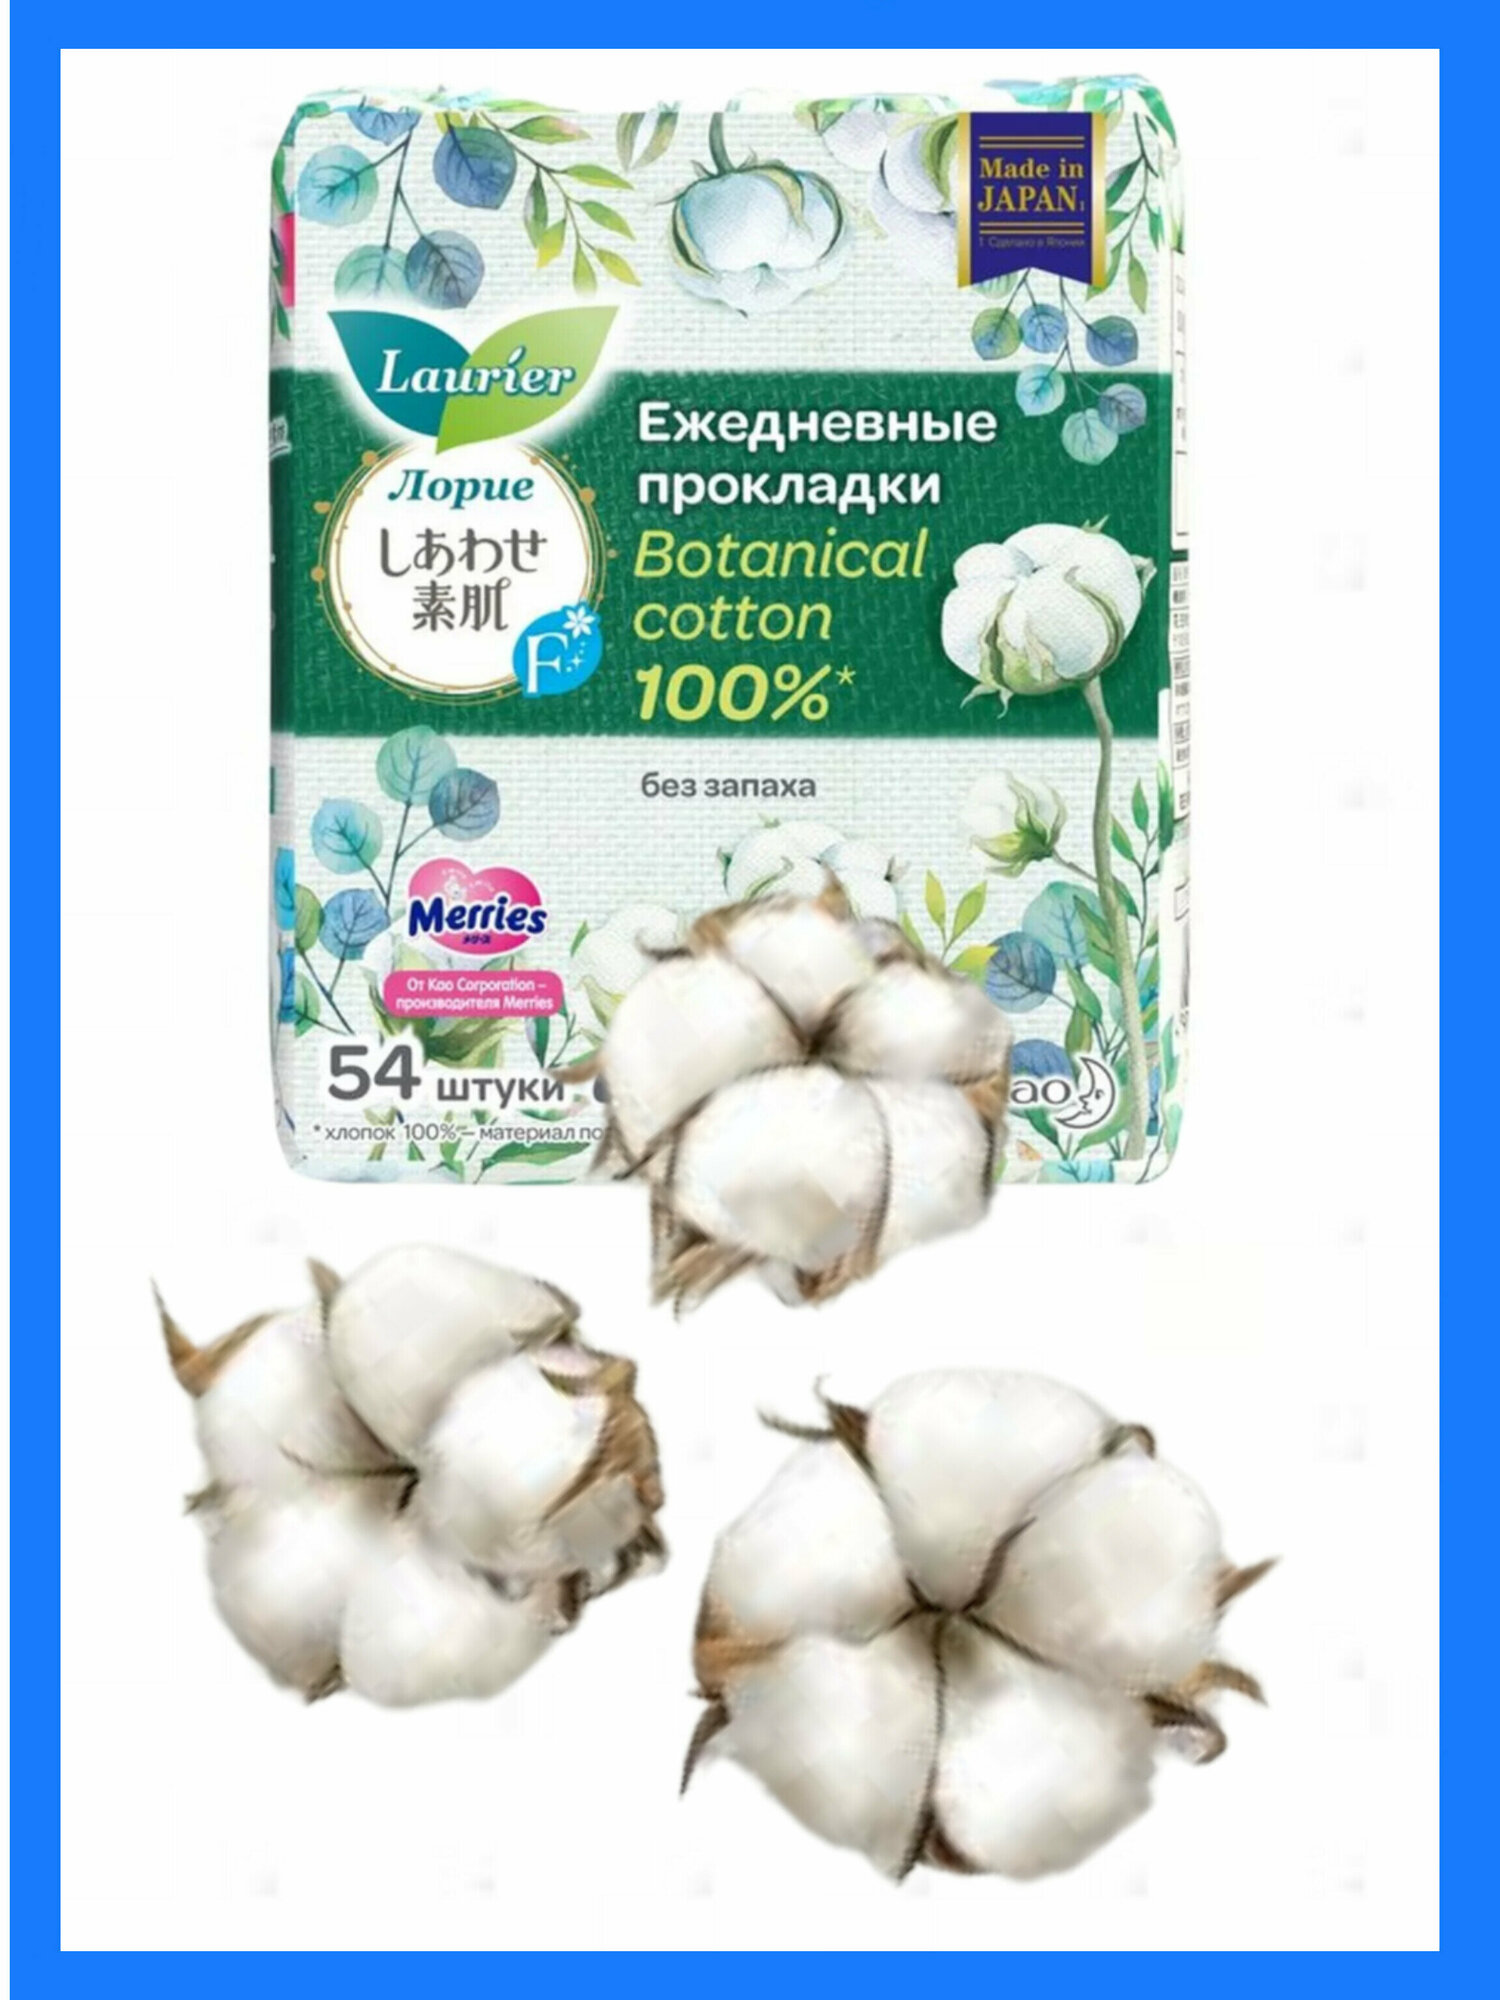 Женские гигиенические прокладки на каждый день Laurier F Botanical Cotton без запаха 54 шт